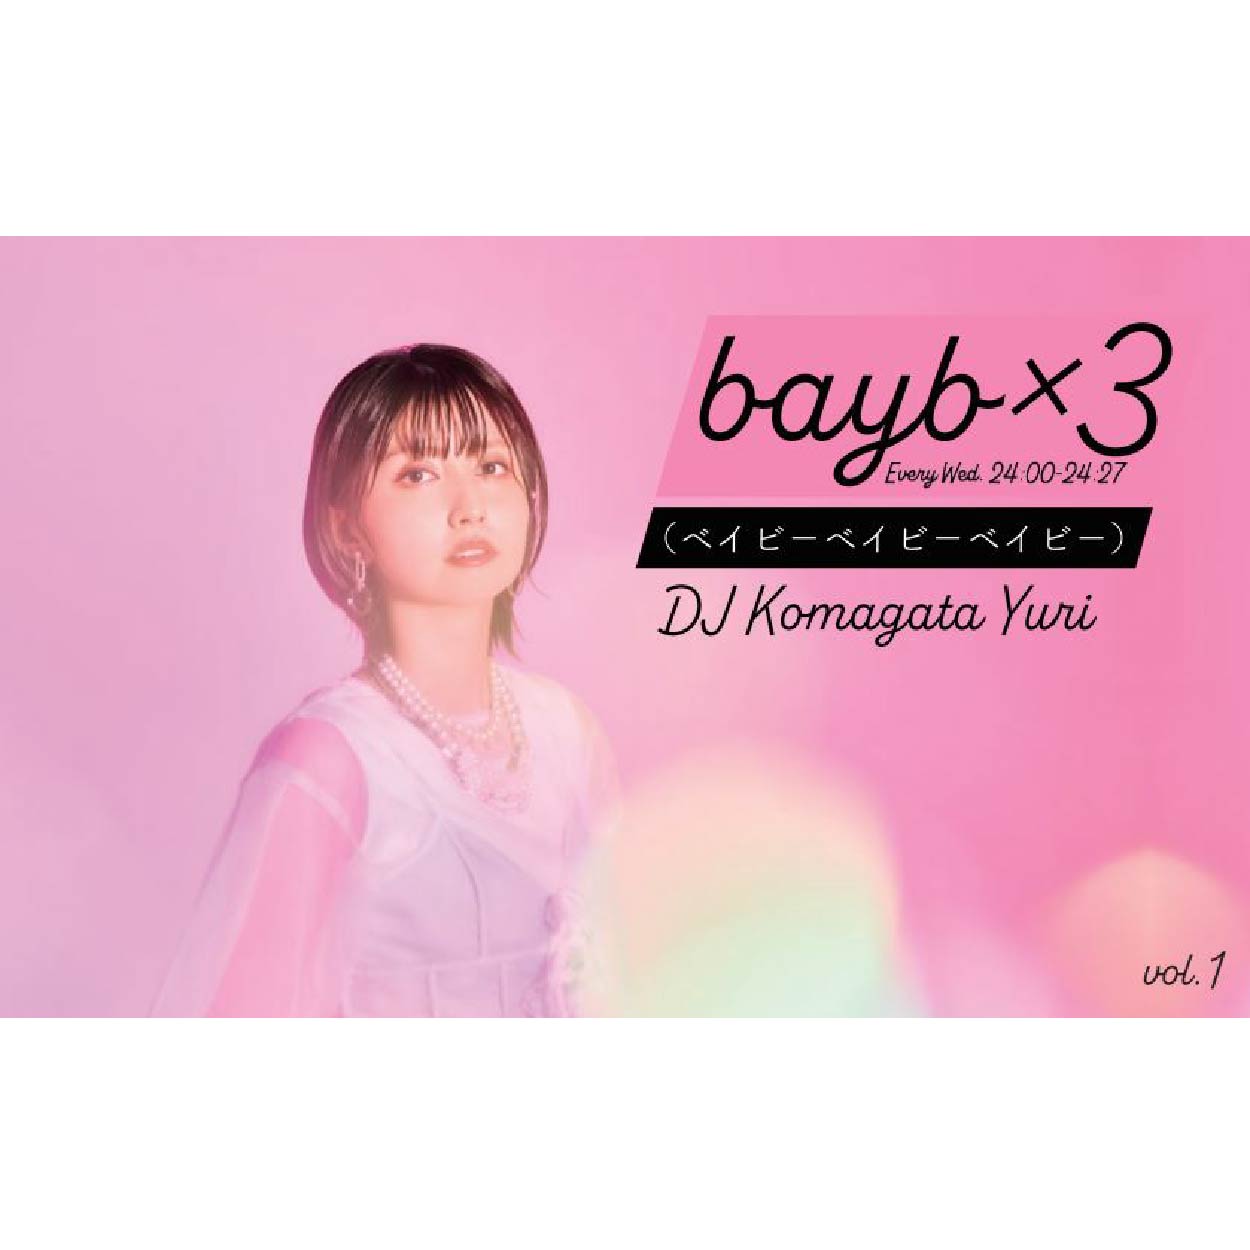 駒形友梨 / bayb×3（vol.1）